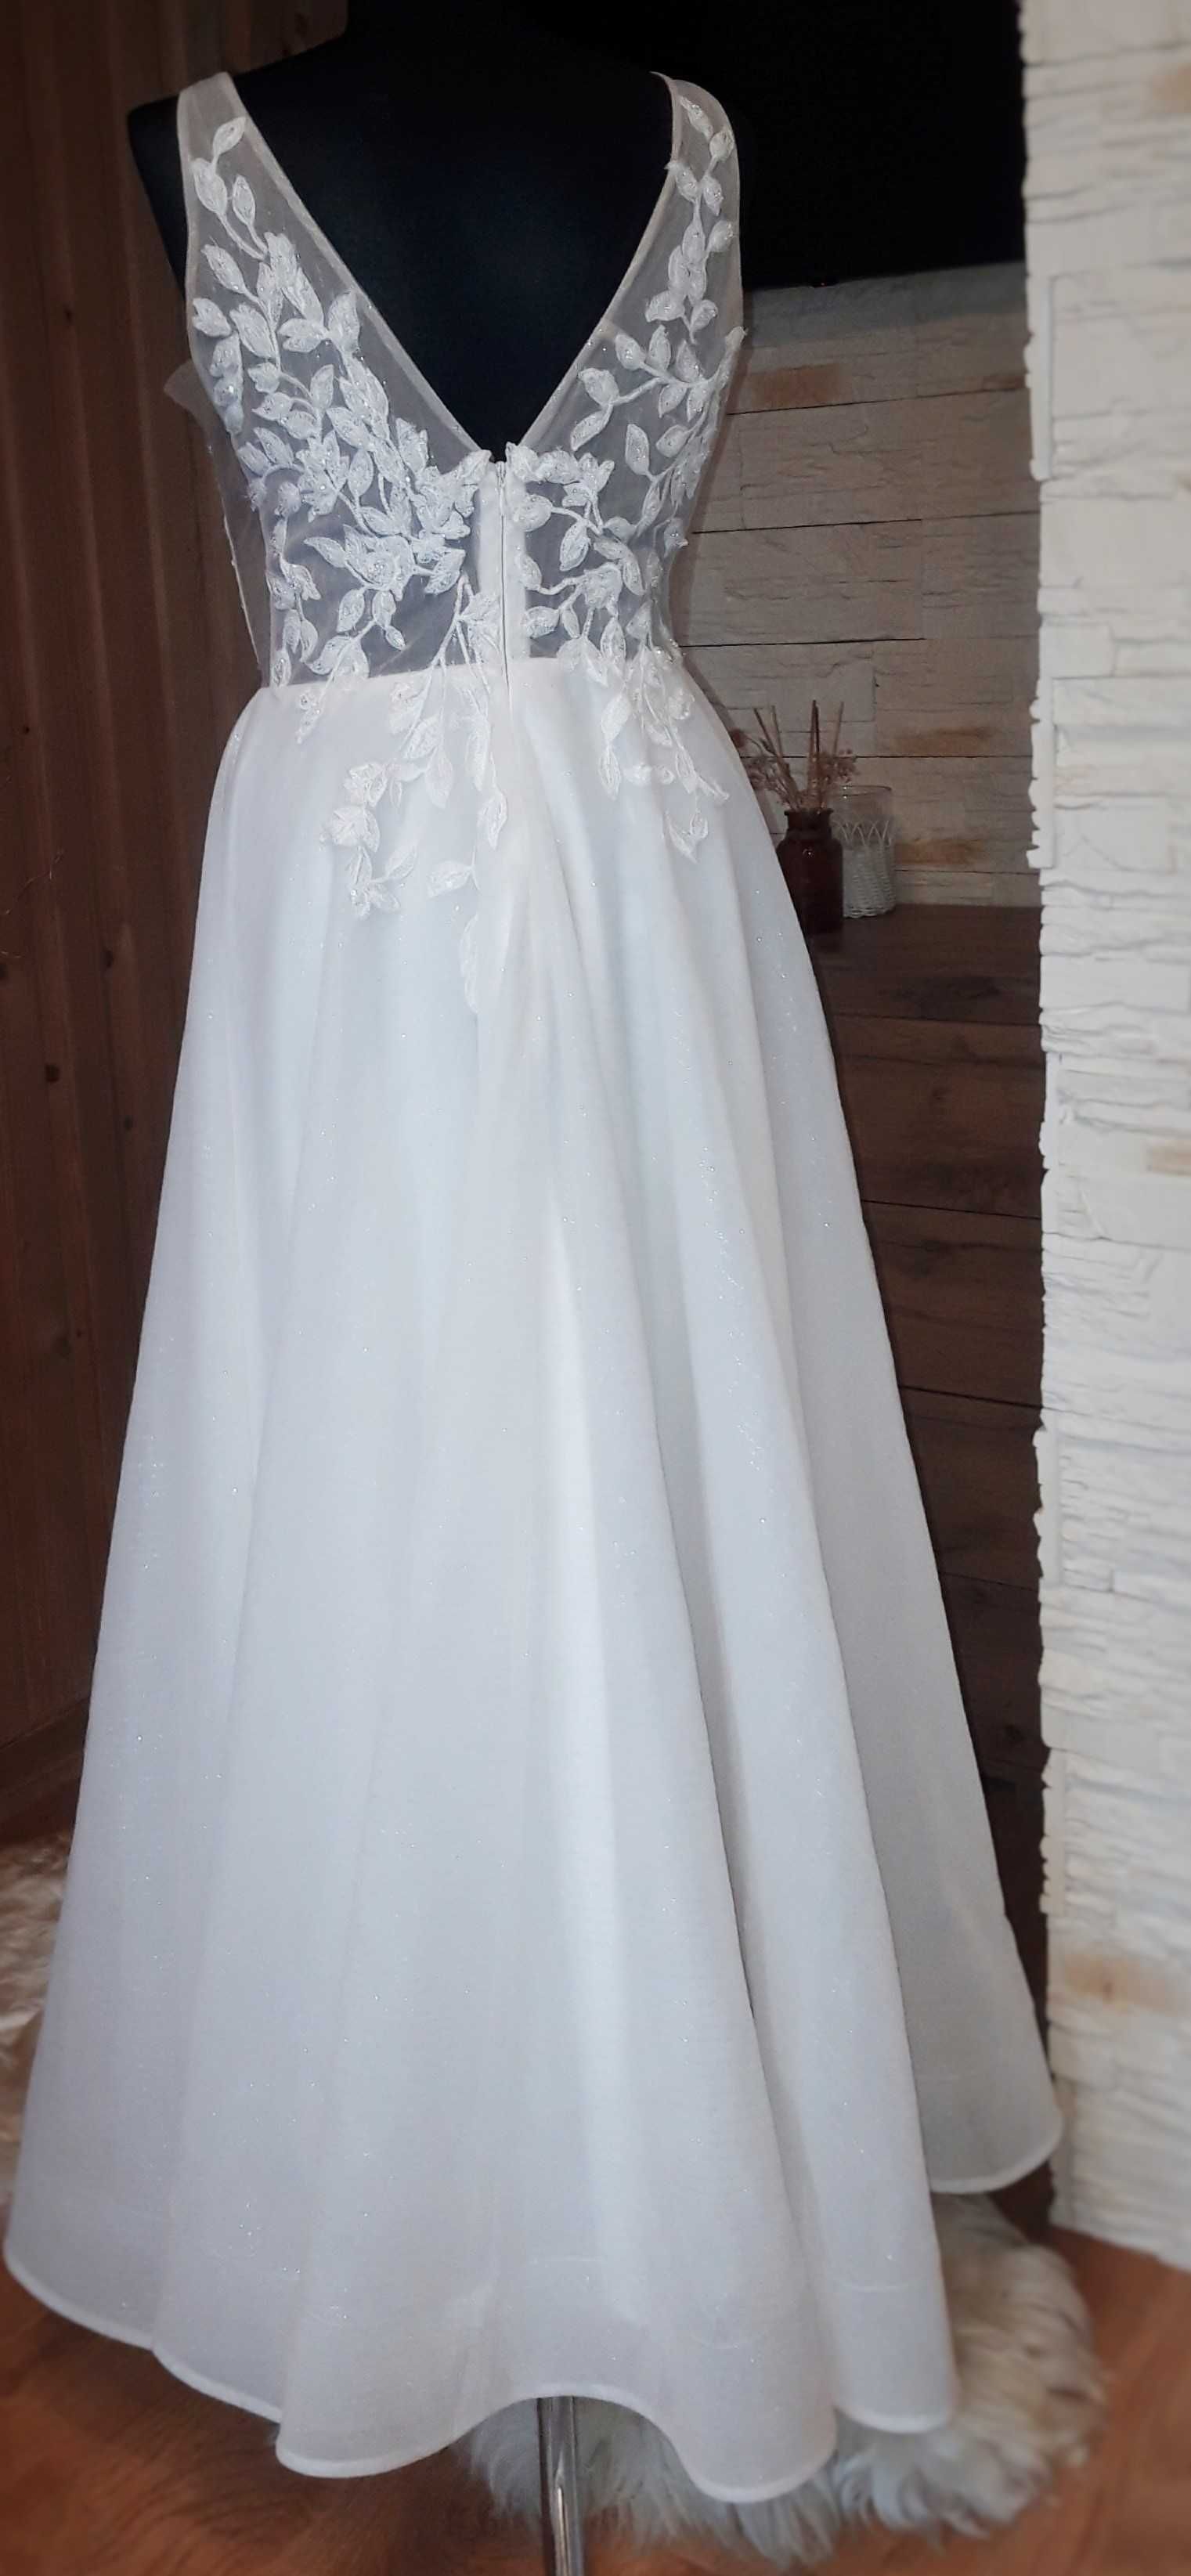 błyszcząca suknia ślubna w kształcie litery A